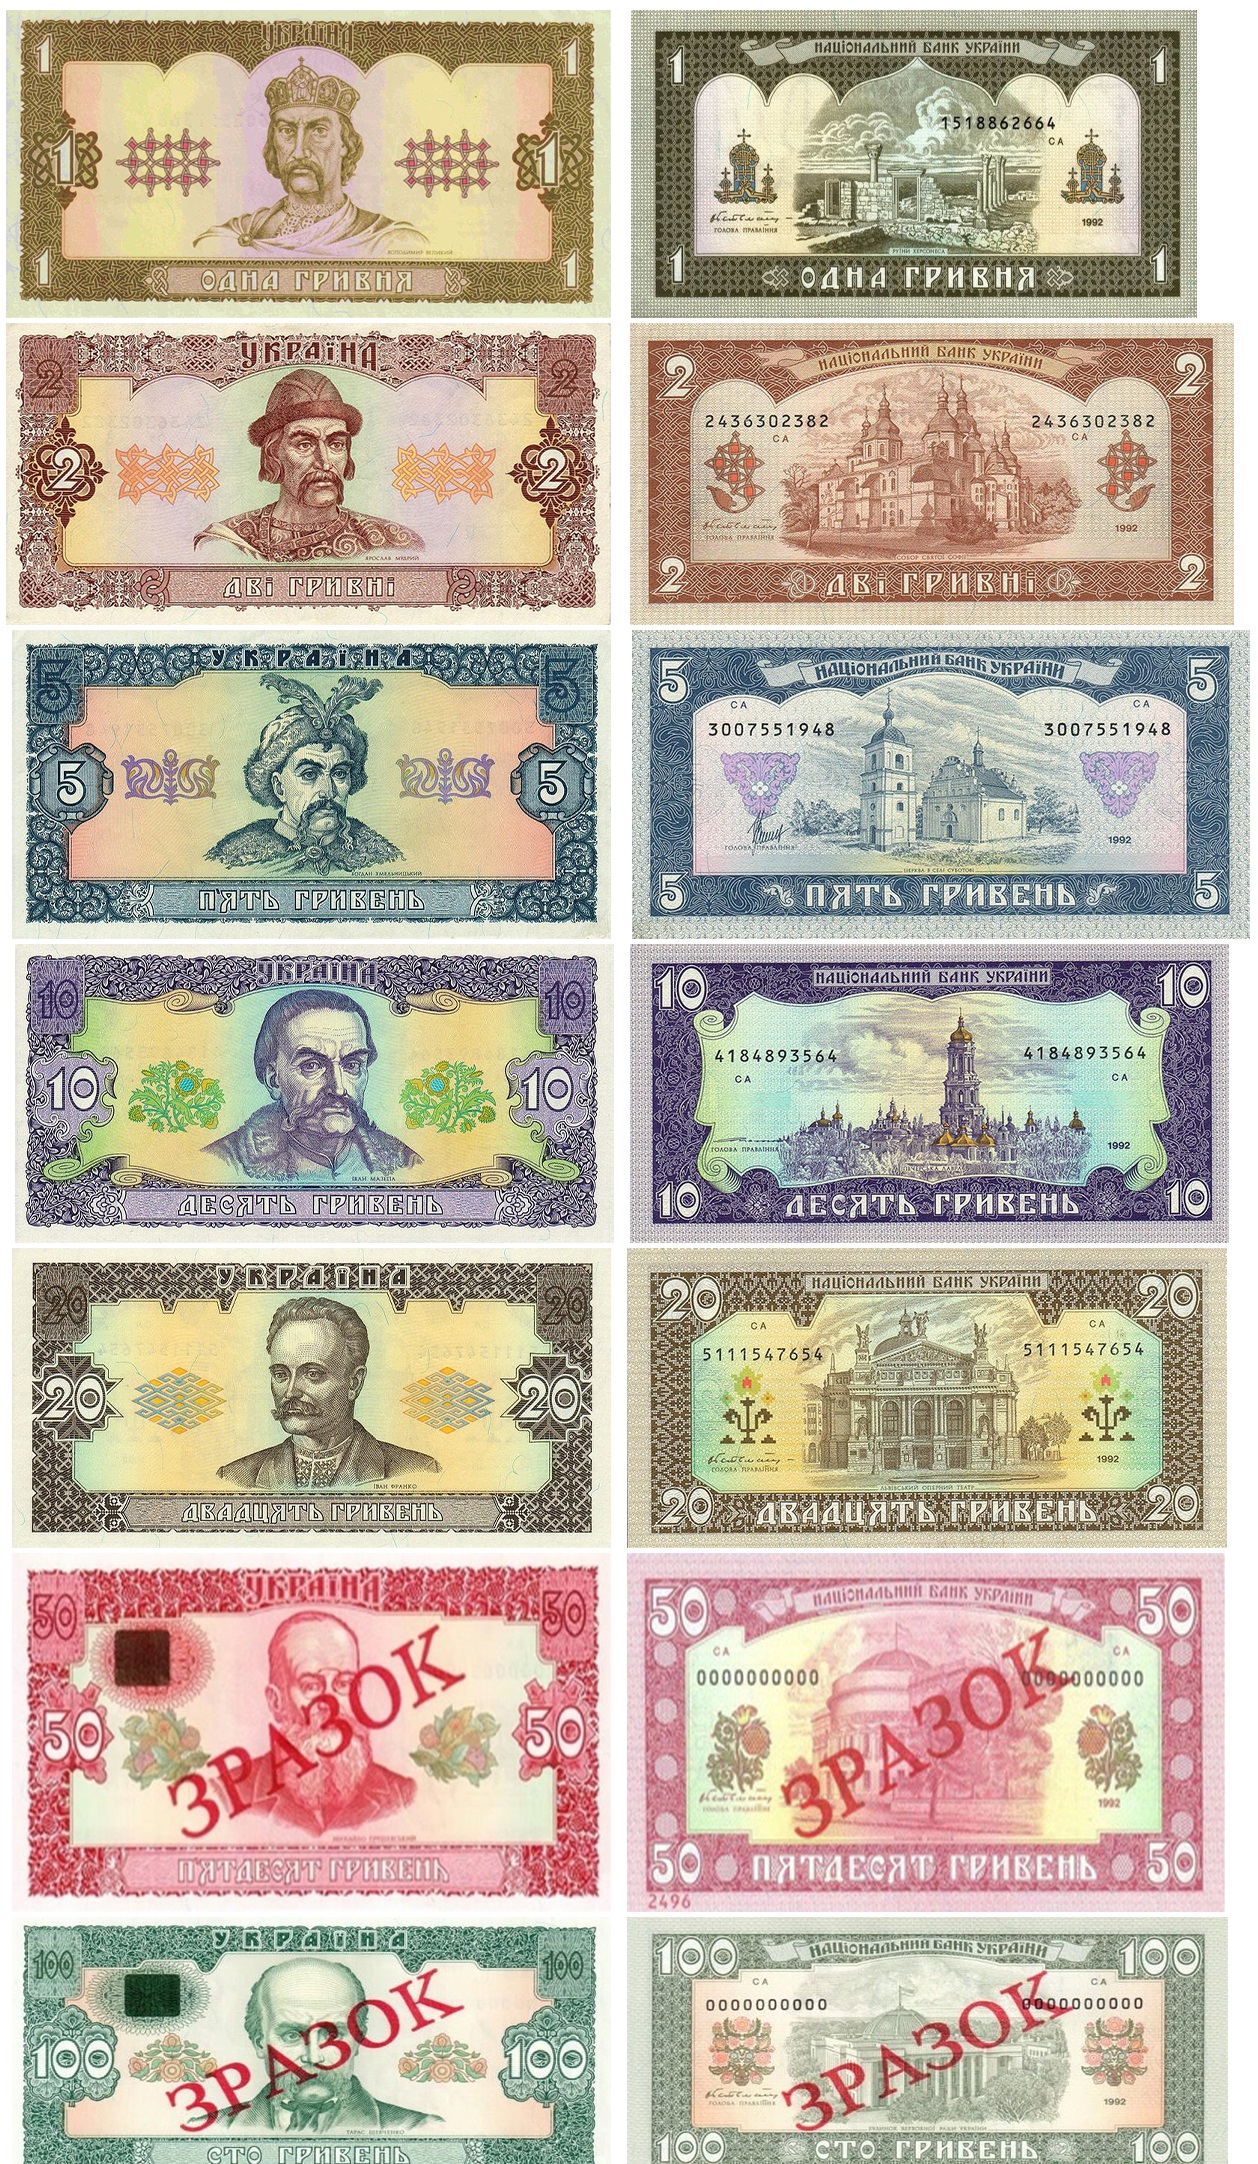 Банкноты первого поколения (выпуск 1992 года)